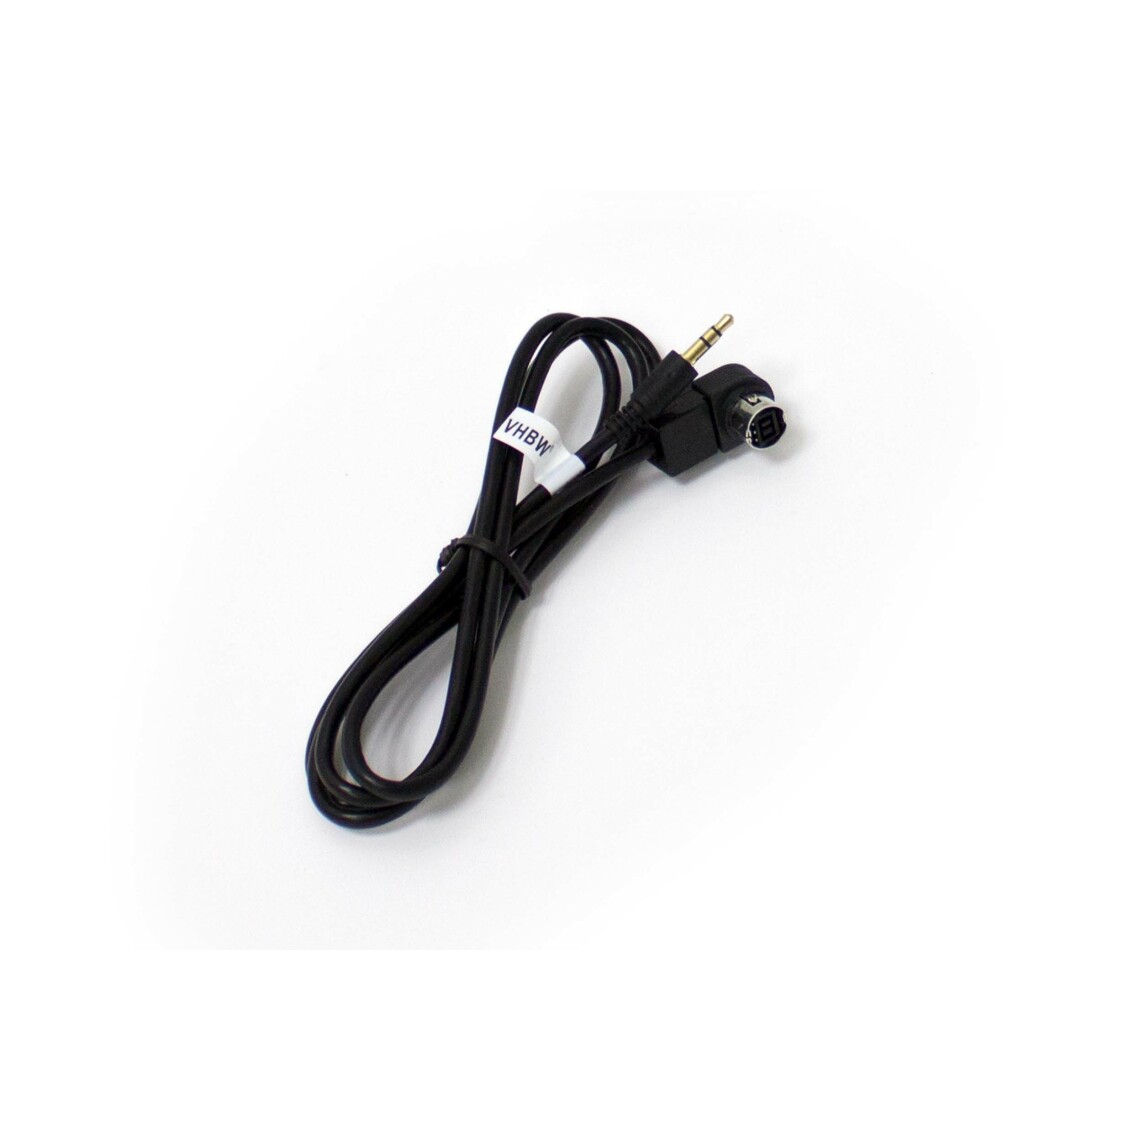 Vhbw - vhbw Câble adaptateur de ligne AUX Radio compatible avec Alpine CDA-9831R, CDA-9833R, CDA-9847R, CDA-9851R, CDA-9852RR/RB voiture, véhicule - Alimentation modulaire